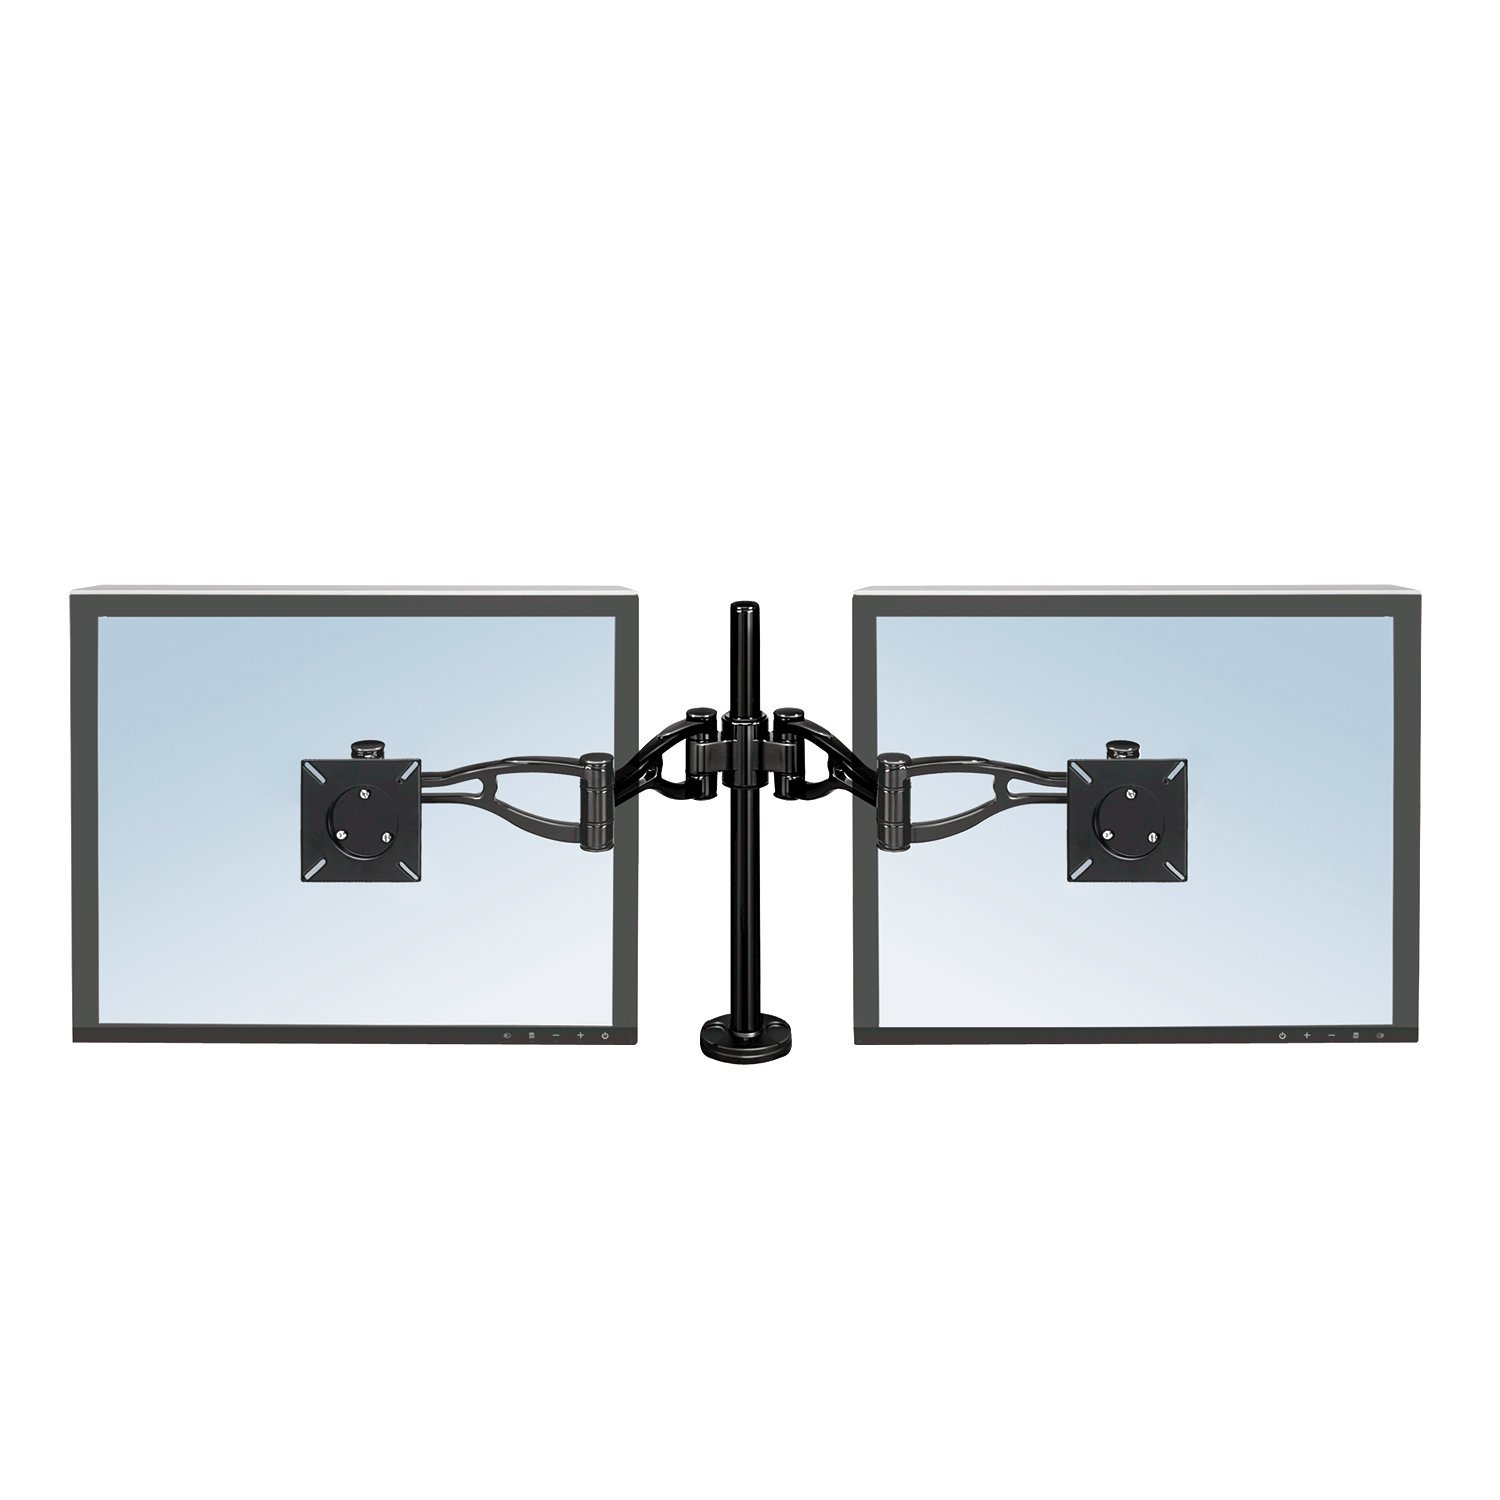 Fellowes Monitorarm Vista für 2 Bildschirme - Befestigung mit Klemme / Kabeldurchlass - flexibel verstellbar - für Monitore bis 26 Zoll / 66,04 cm